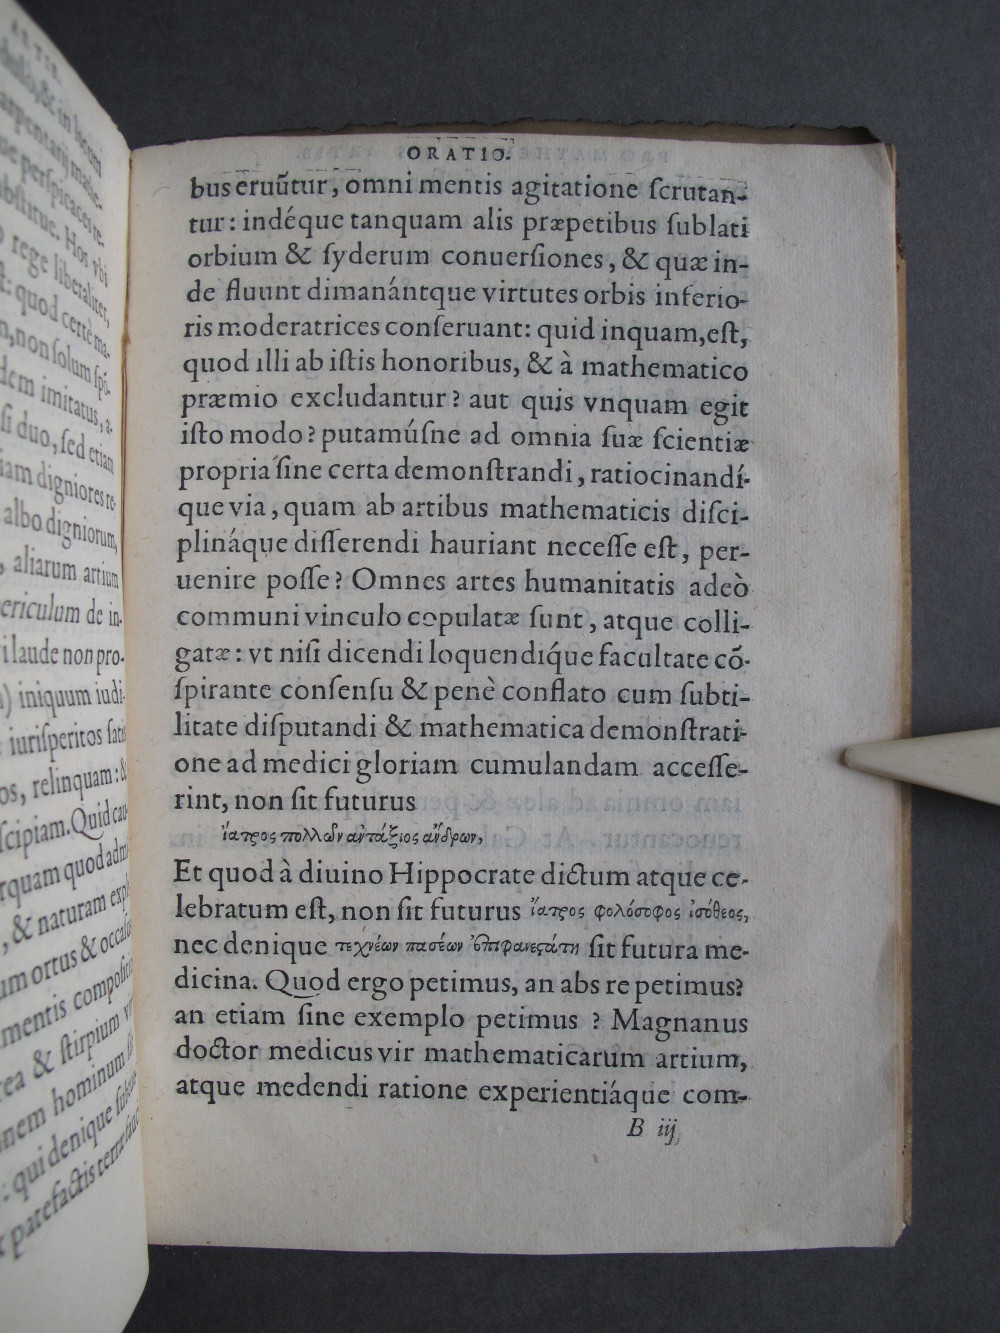 Folio 7 recto